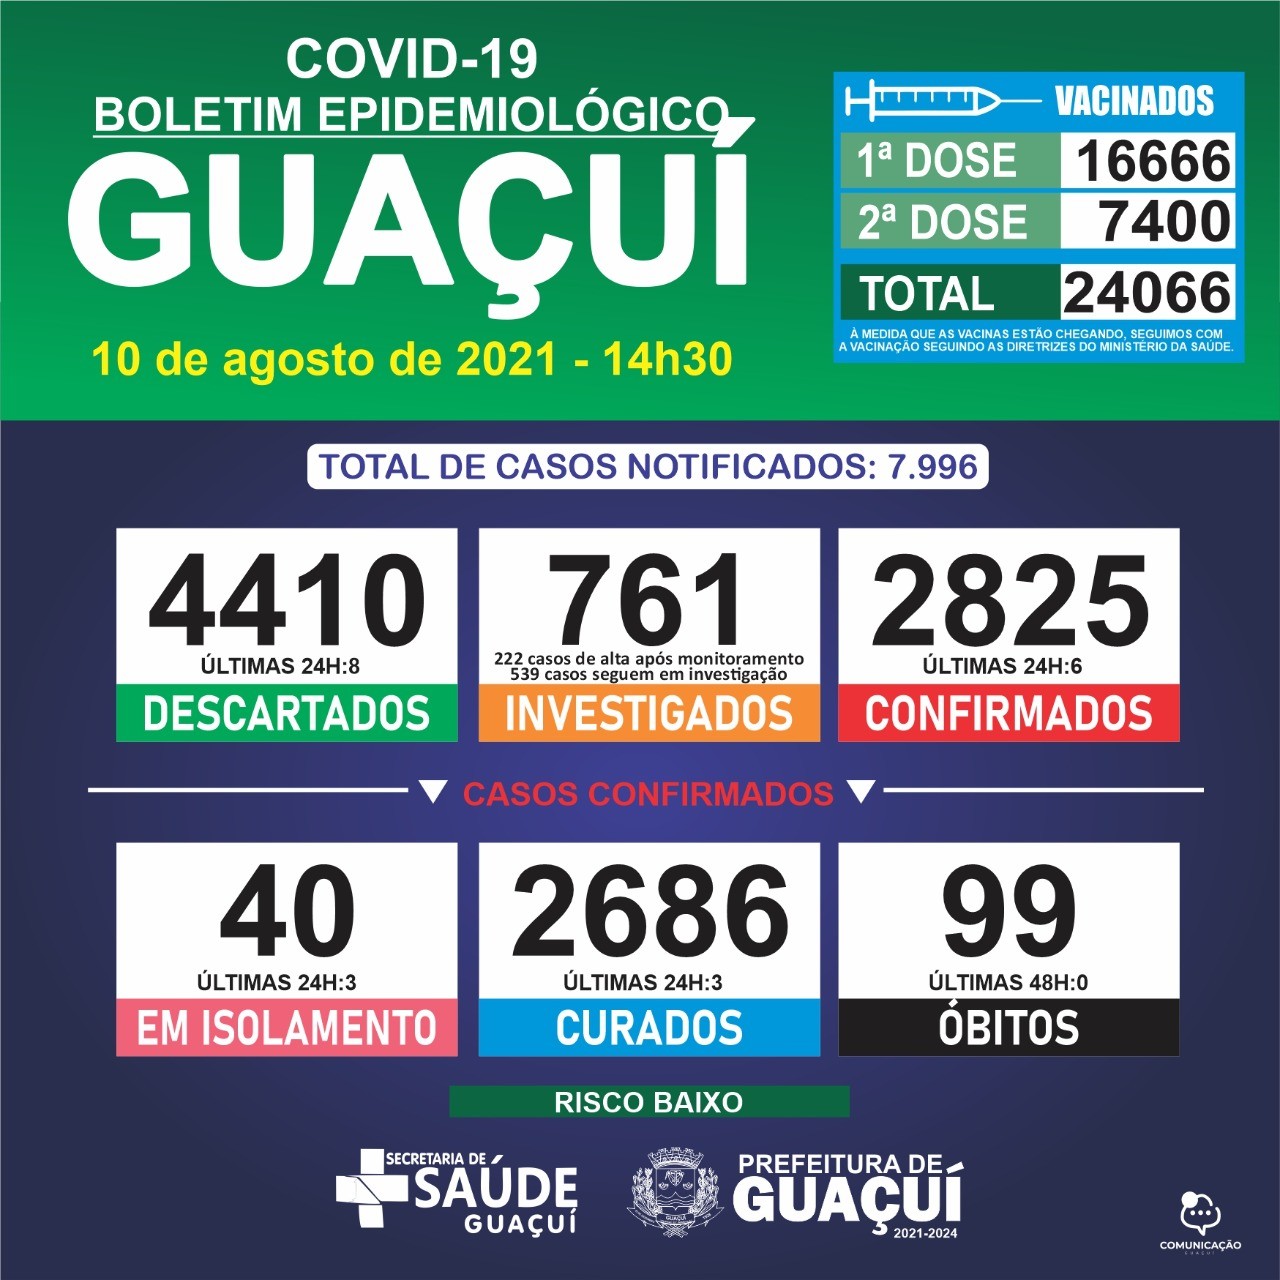 Boletim Epidemiológico 10/08/21: Guaçuí registra 6 casos confirmados e 3 curados nas últimas 24 horas